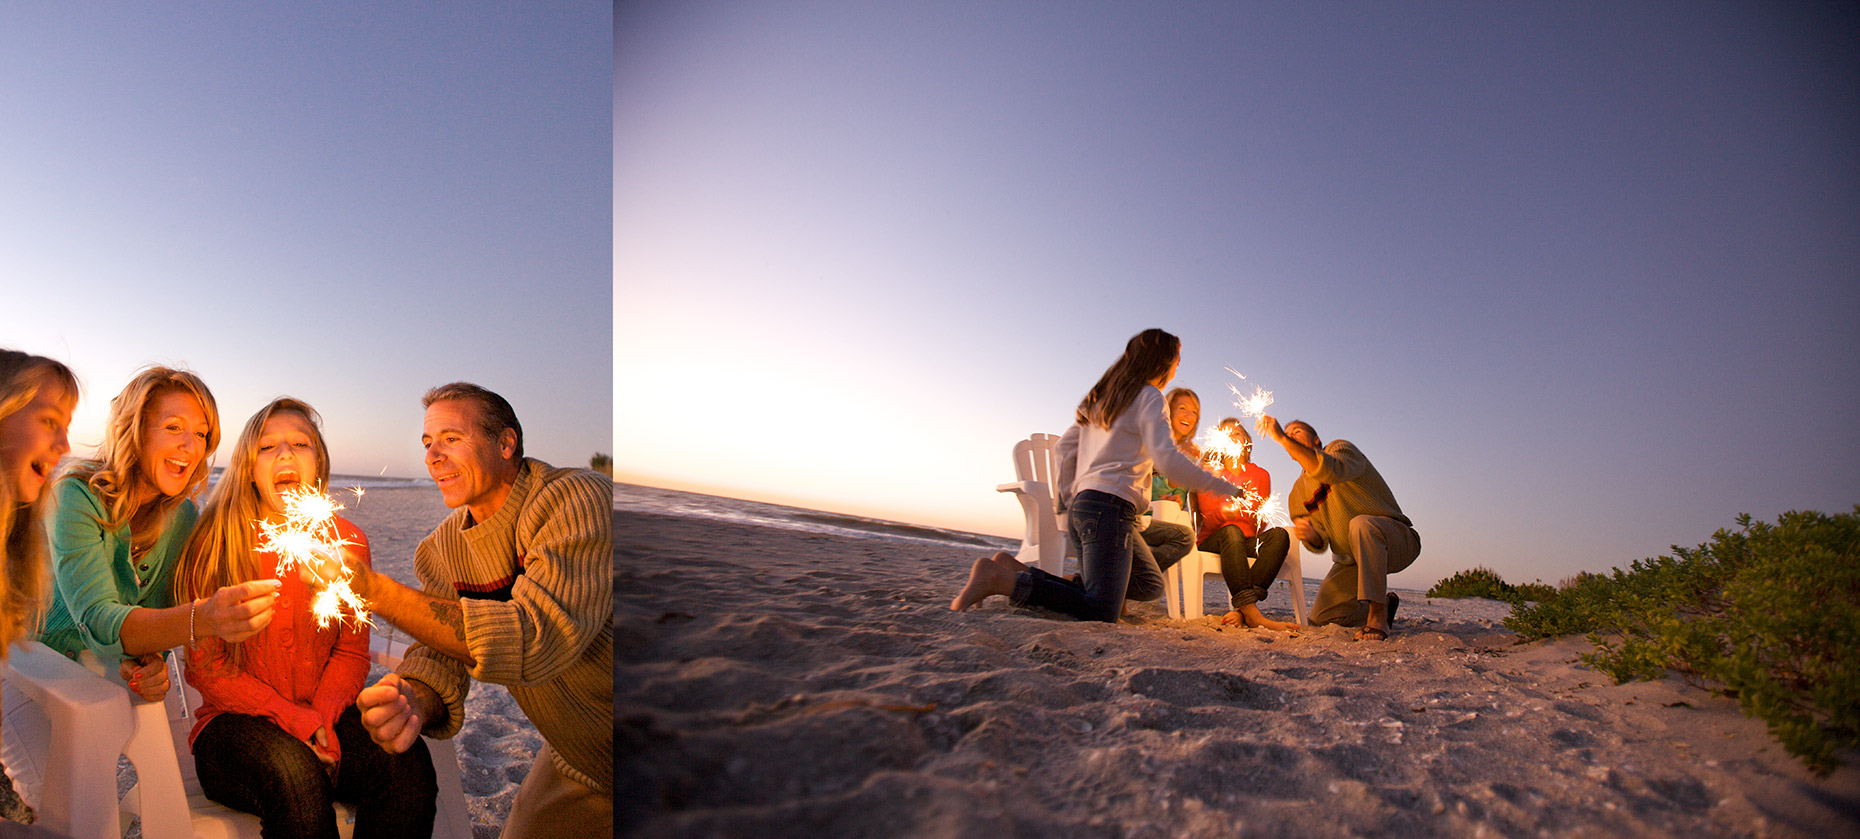 family at beach, dusk with sparklers_Robert_Holland.jpg